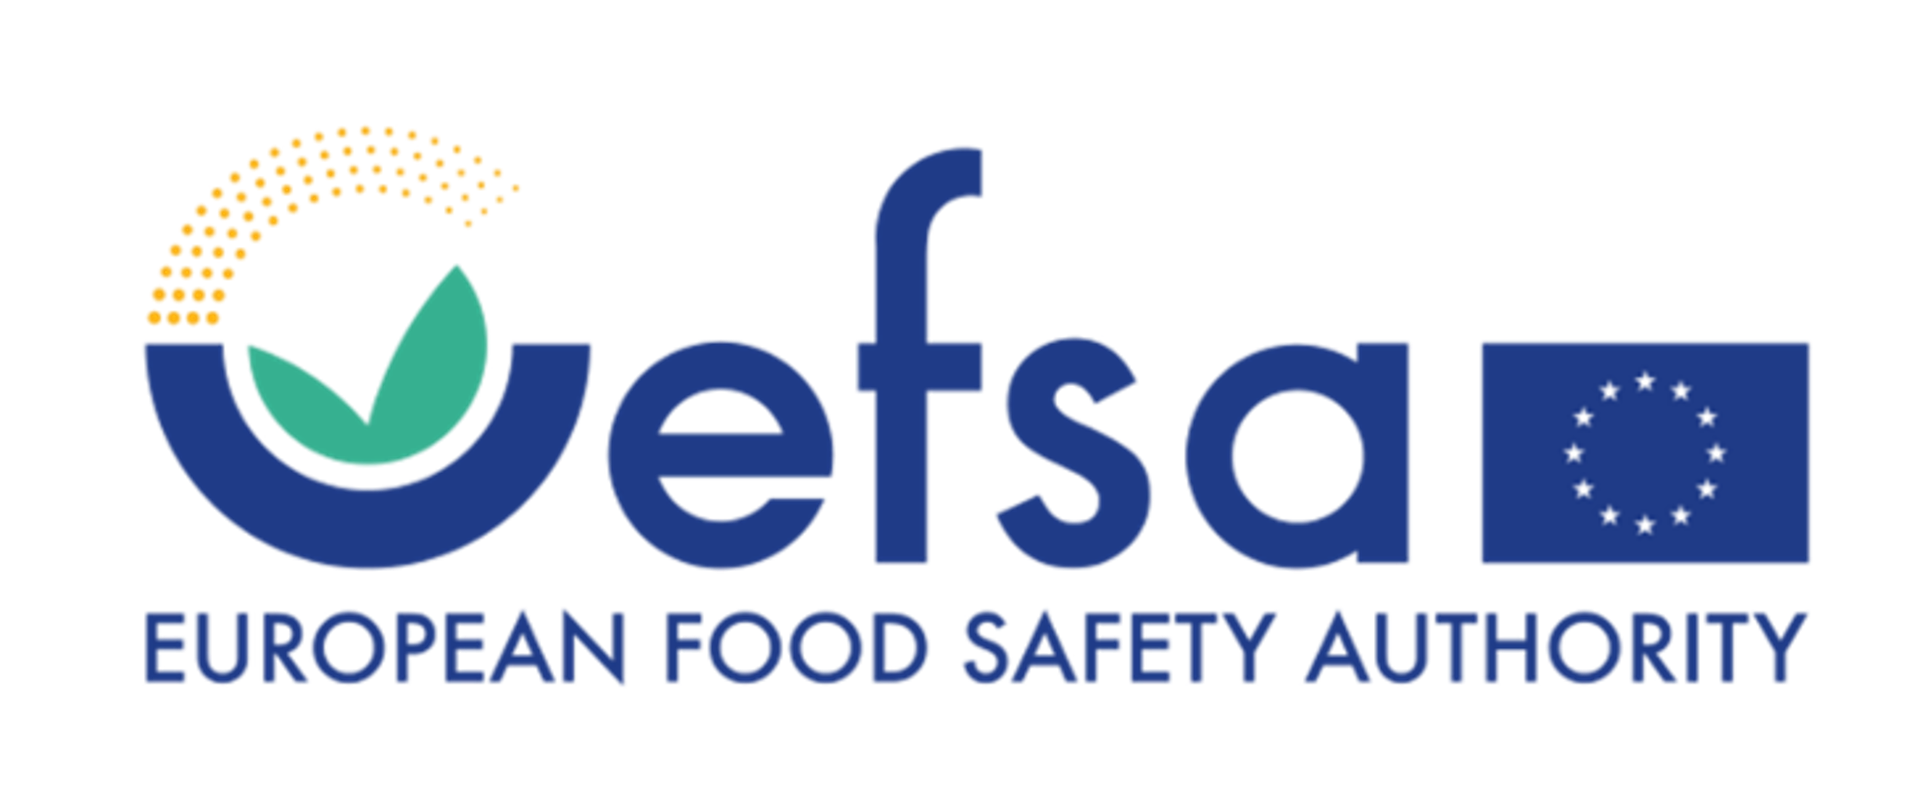 Grafika przedstawia logo i napis EFSA European Food Safety Authority